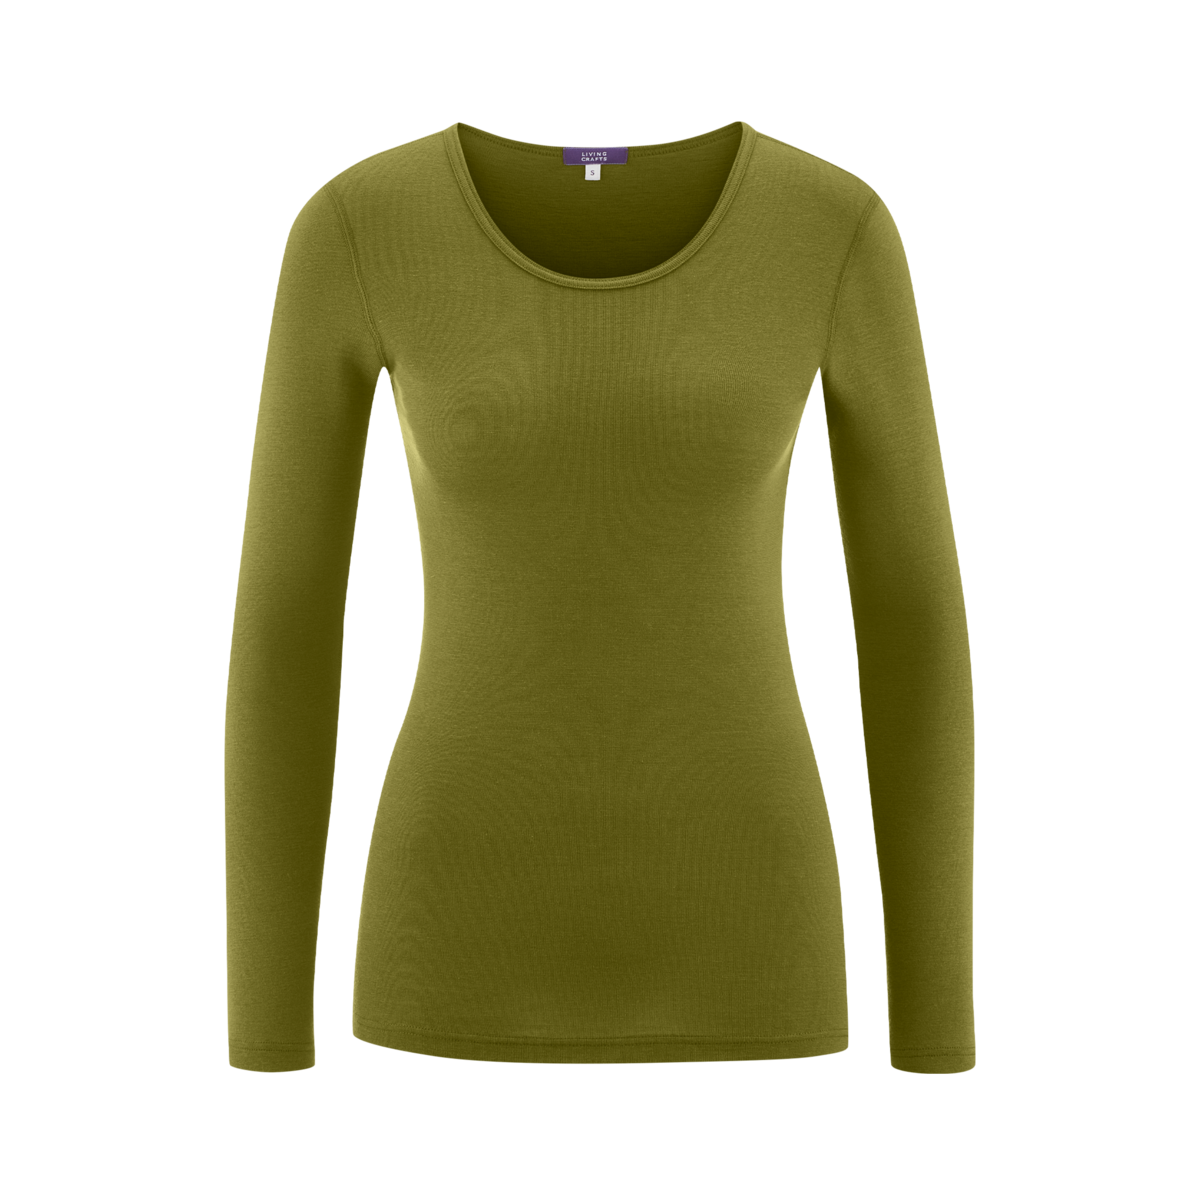 Green Long-sleeved shirt, BIANCA